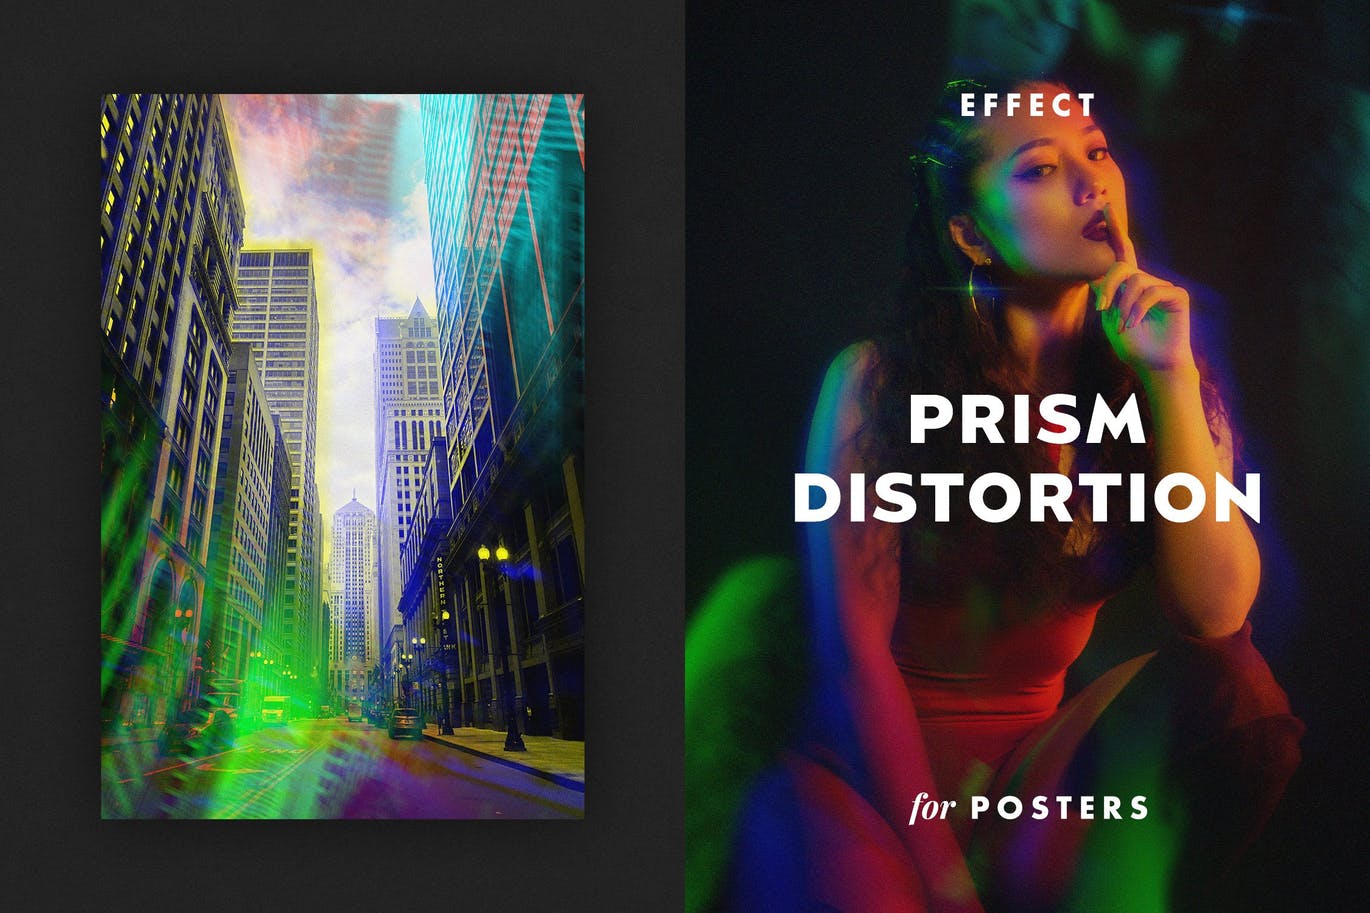 棱镜畸变效果海报模板 Prism Distortion Effect for Posters 插件预设 第1张